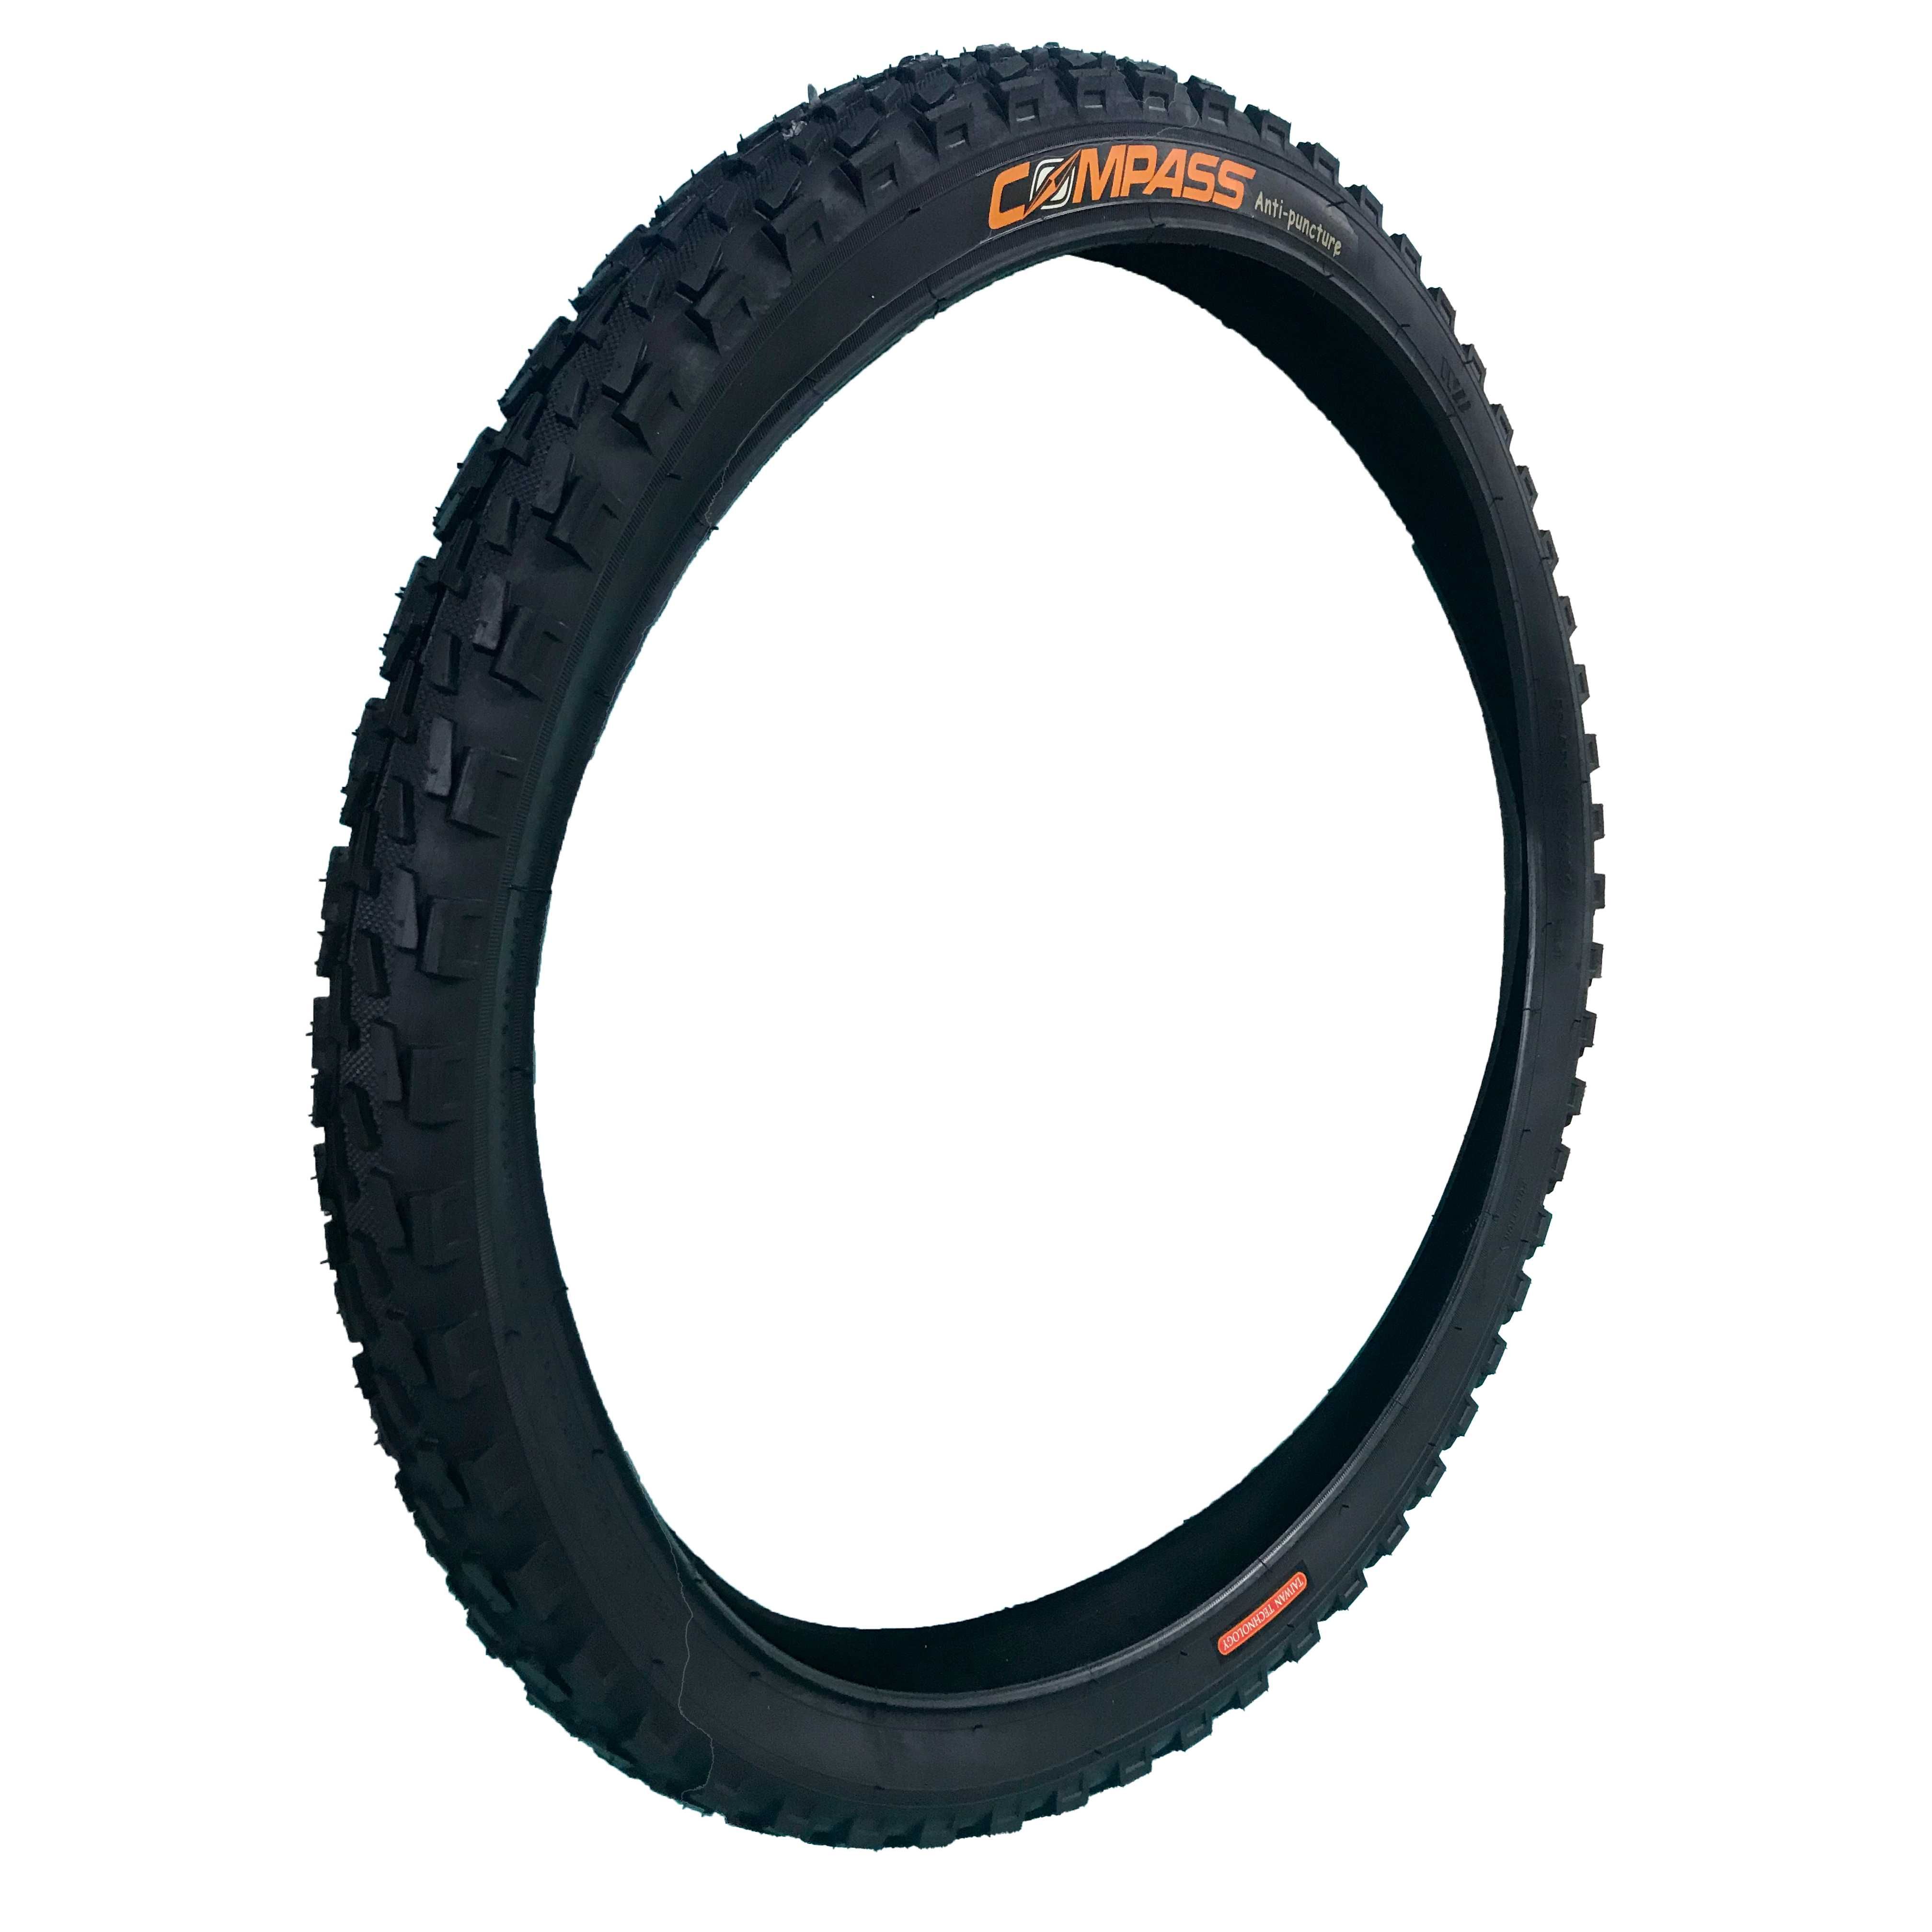 Външна гума за велосипед COMPASS (26 х 2.30) Защита от спукване - 4мм